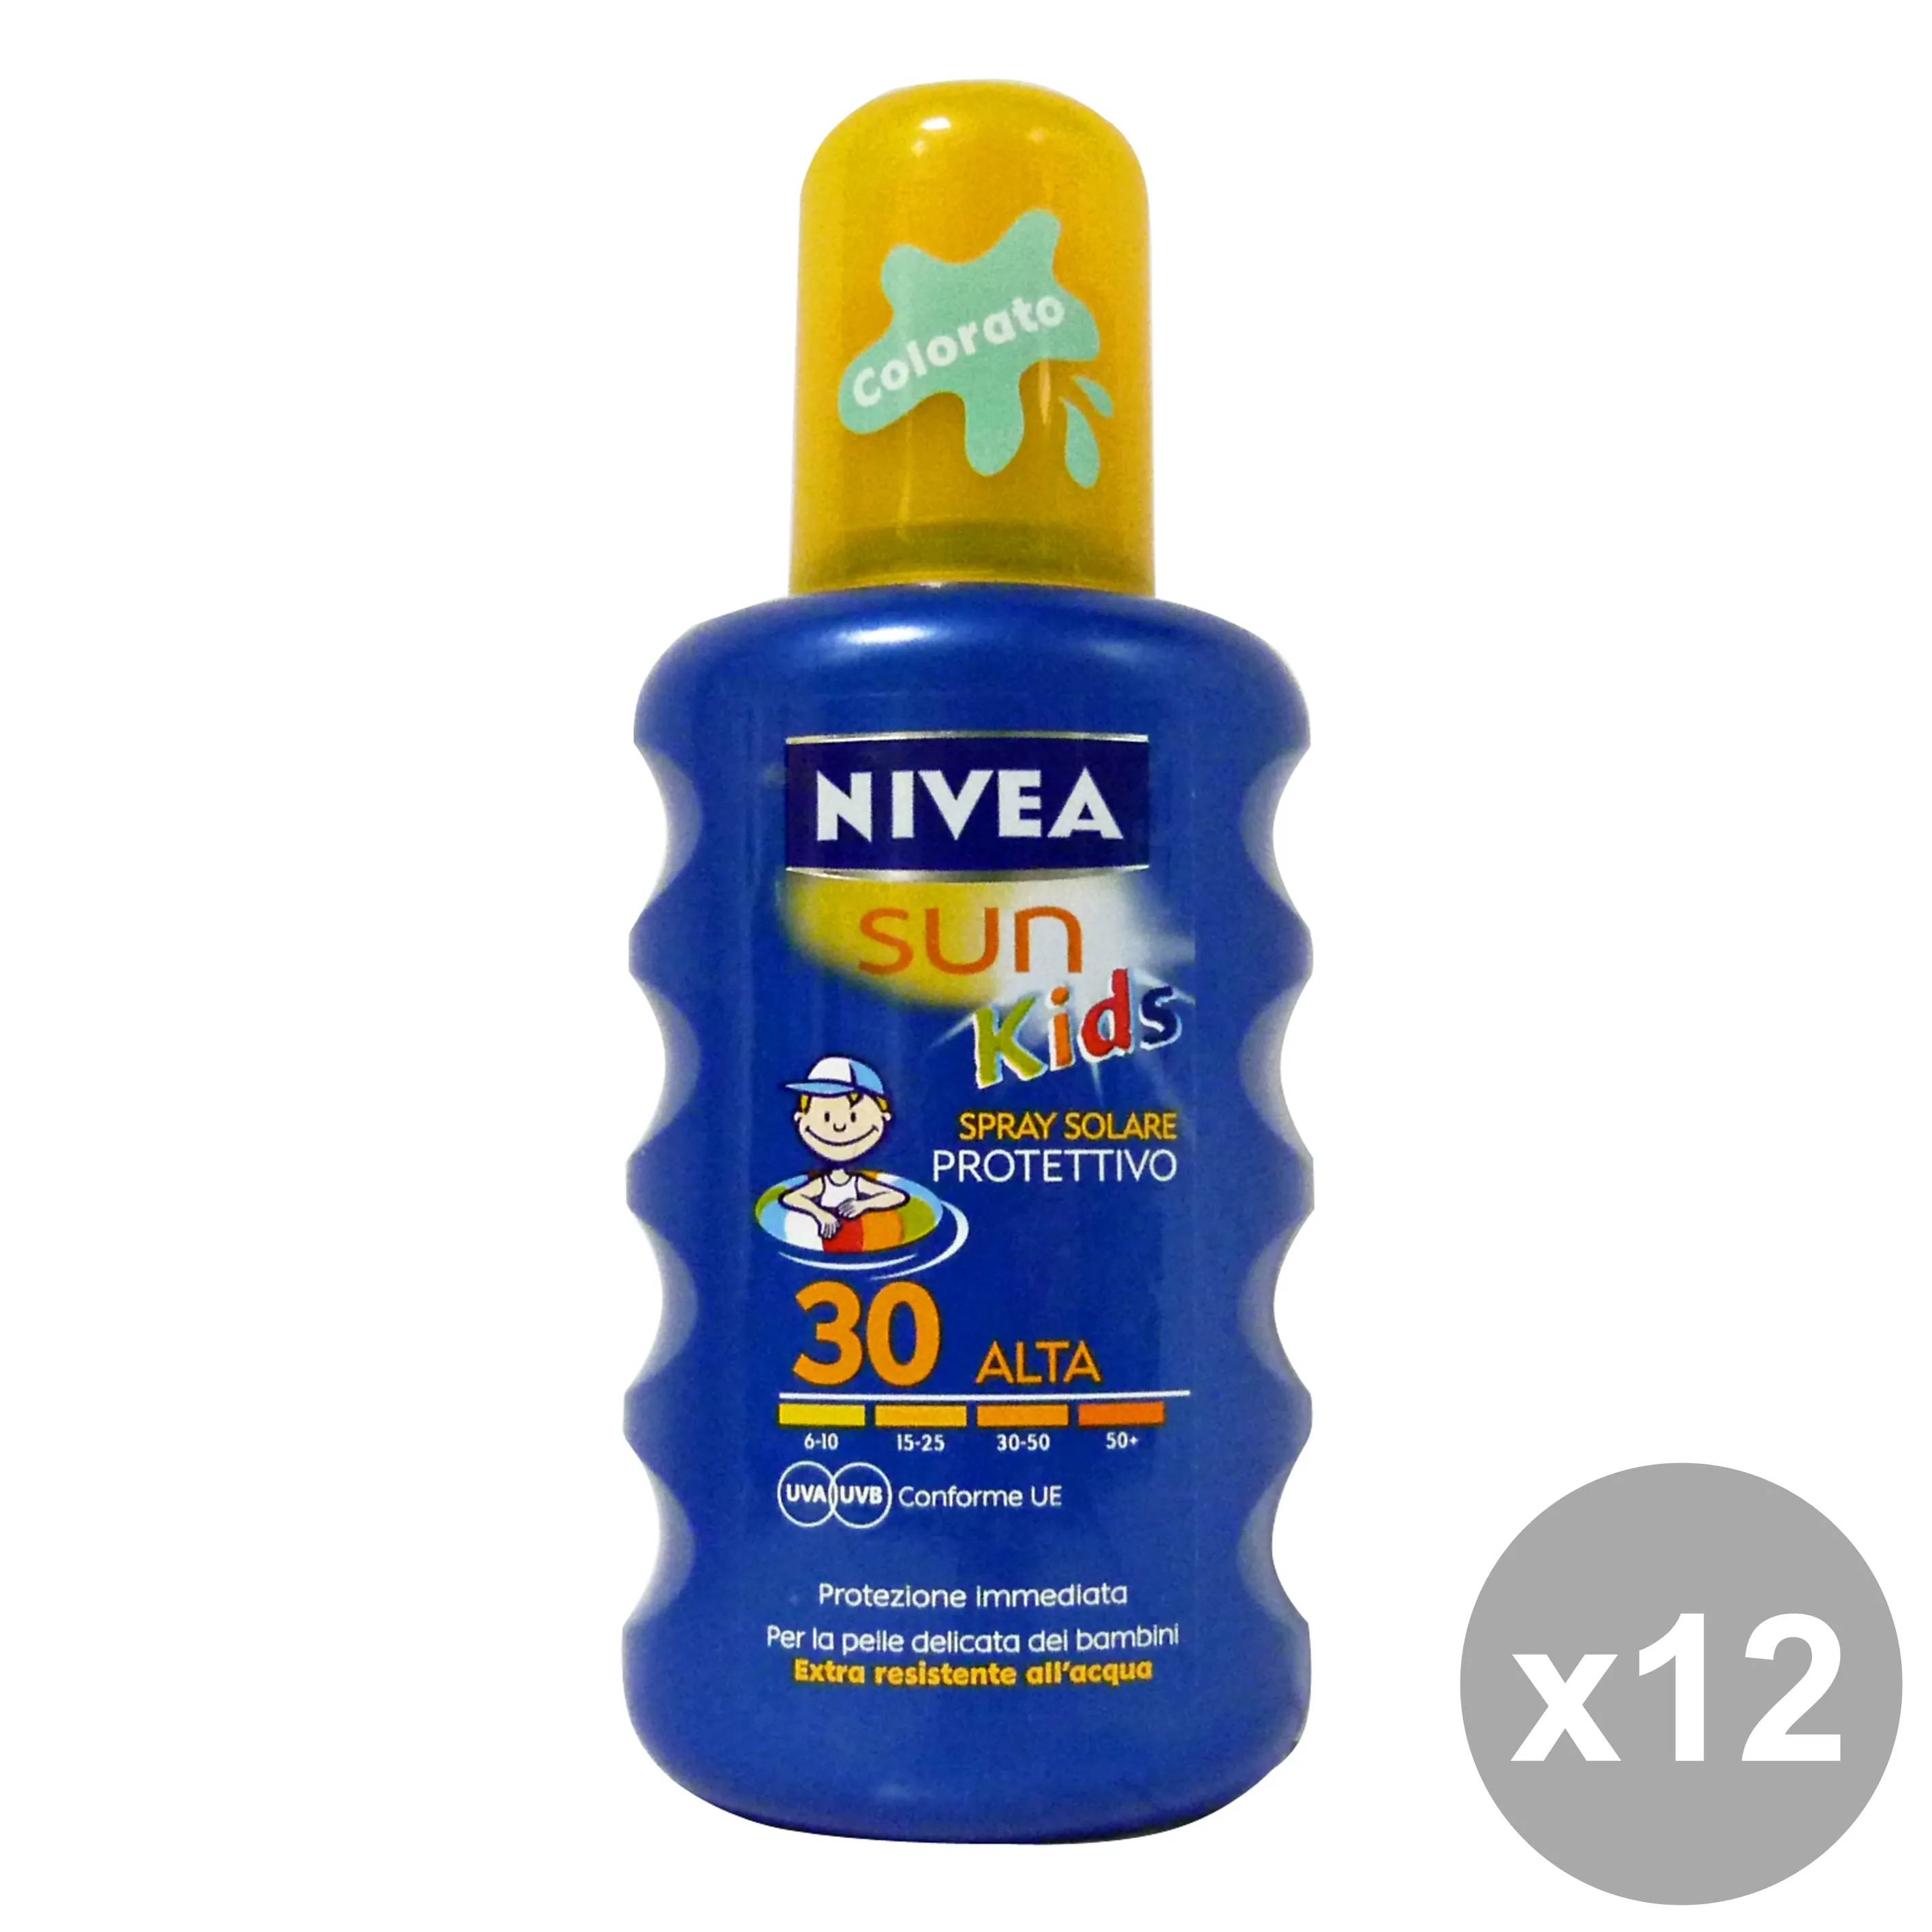 "NIVEA Set 12 Fp30 Bimbi Colorato Spray 200 Ml. Prodotti Solari"